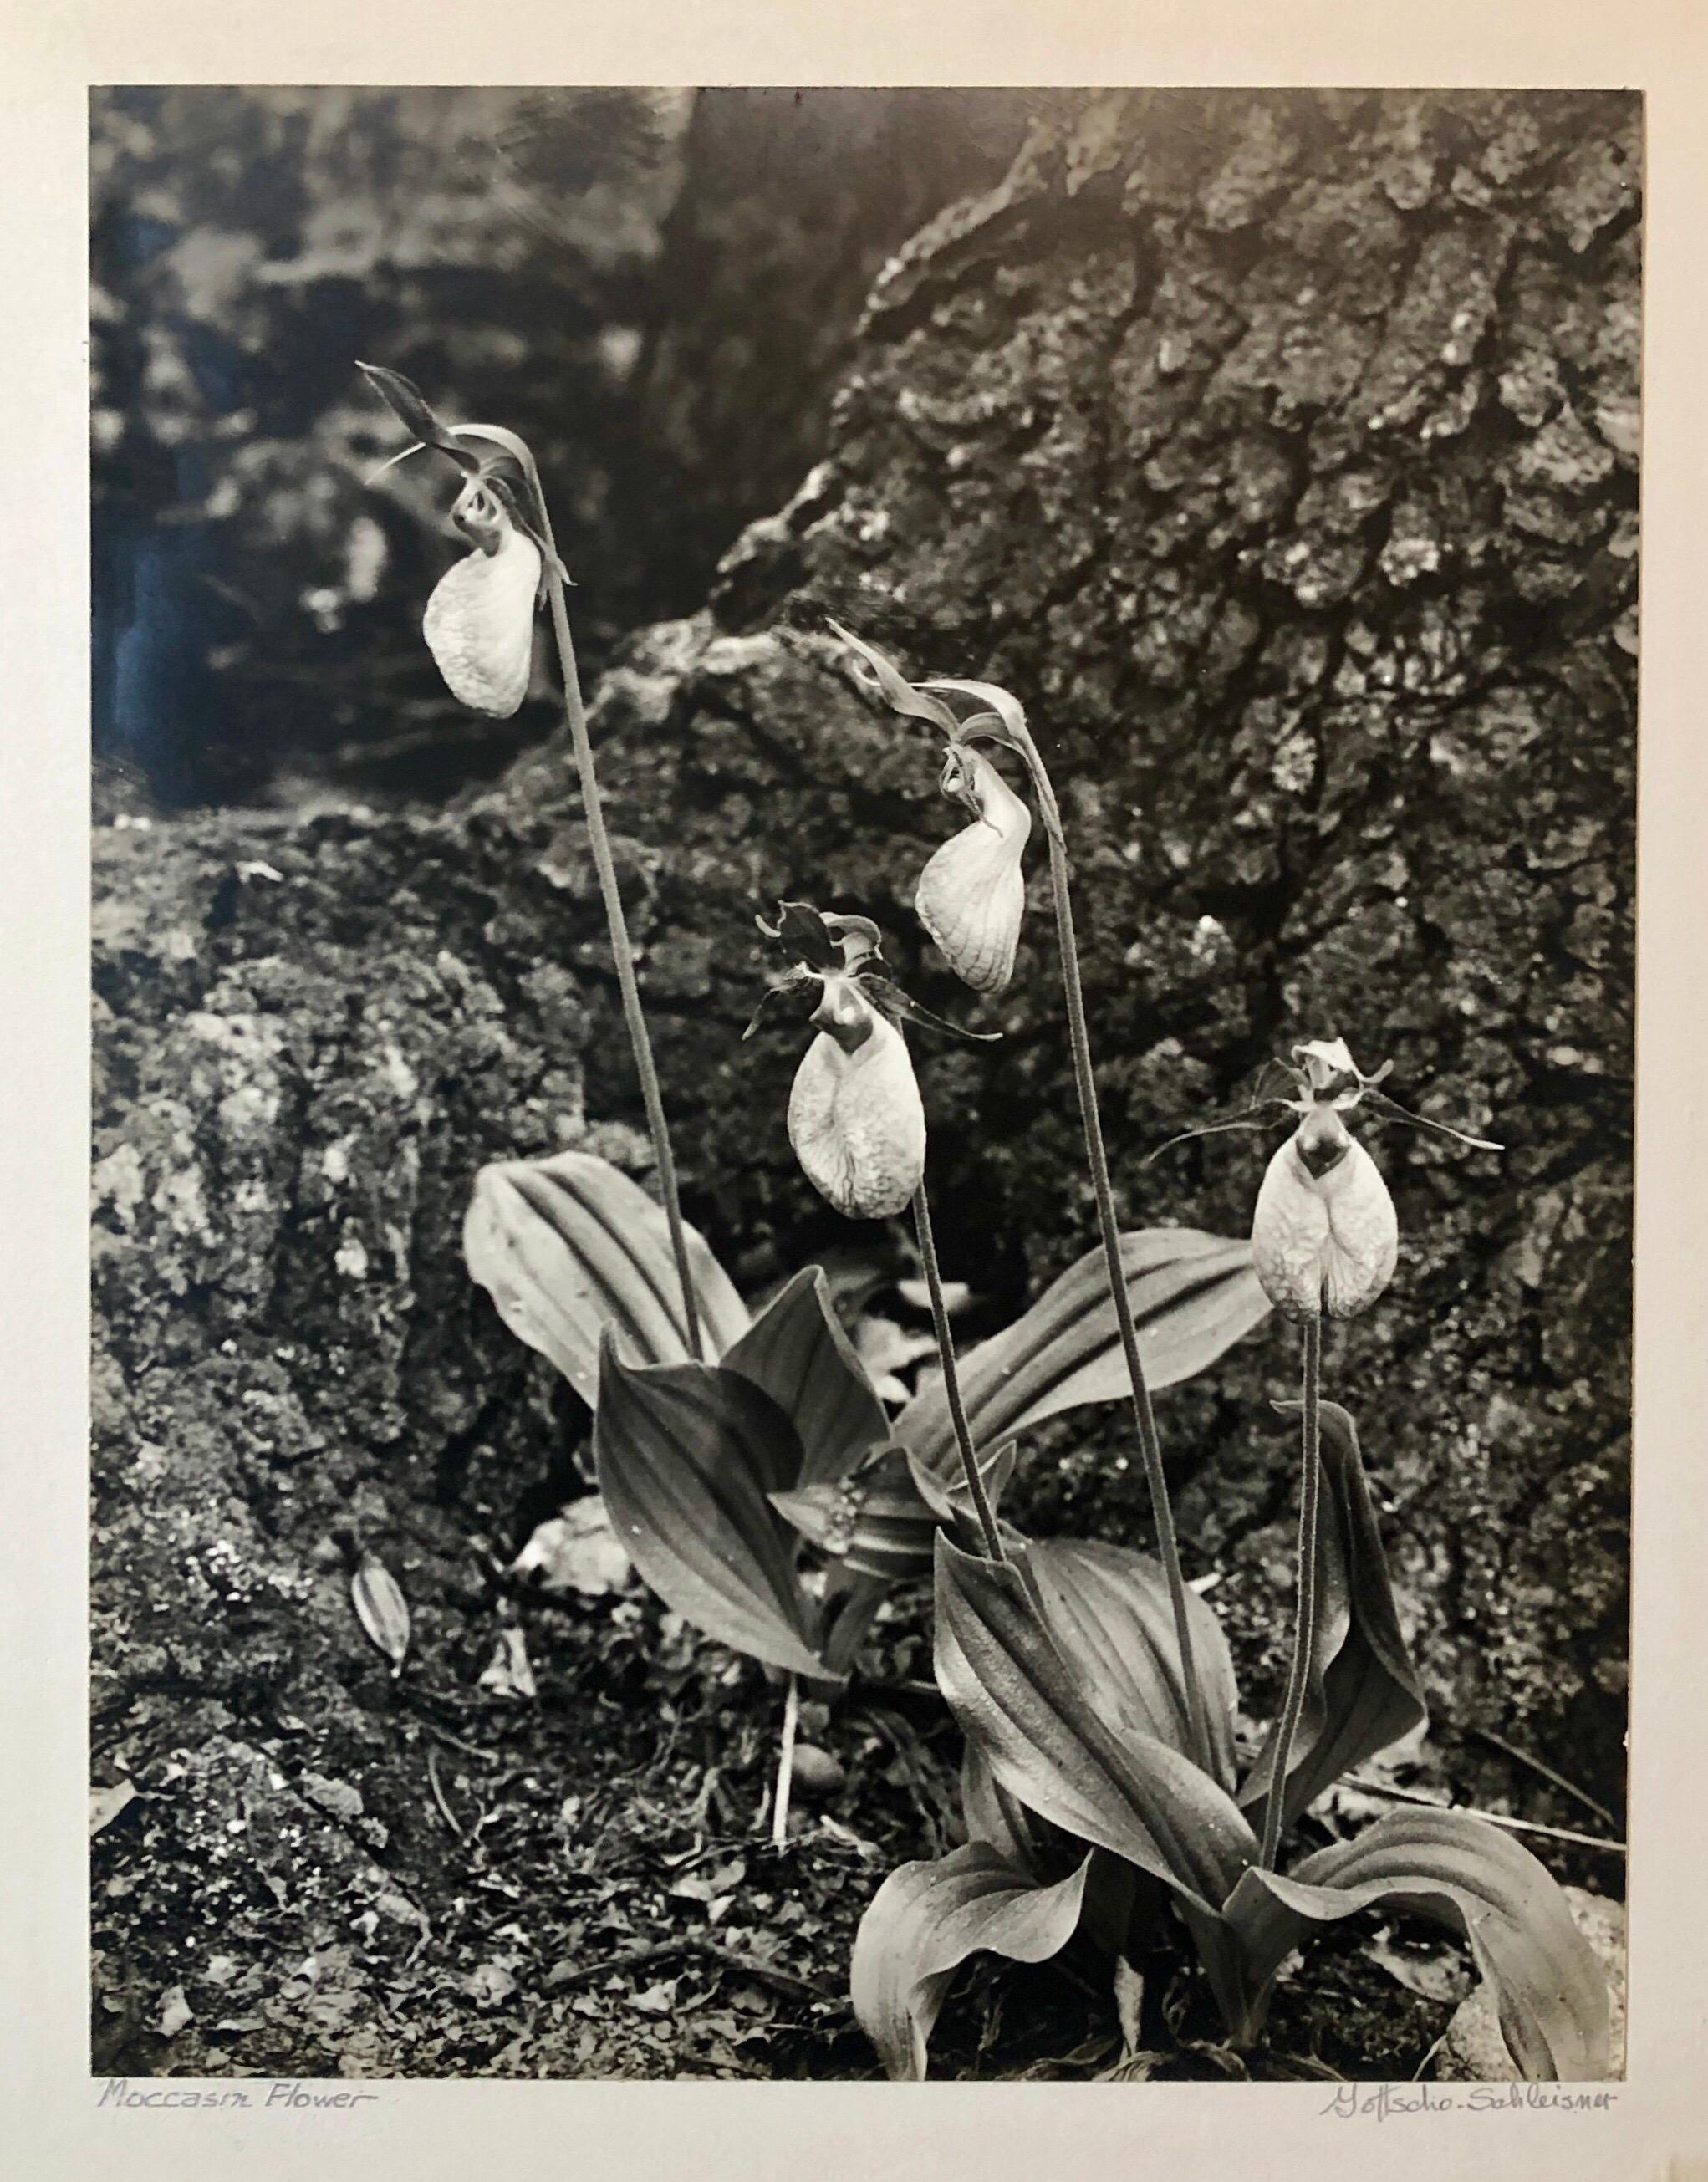 Vintage signé à la main et au tampon des photographes et photo numérotée de Moccasin Flower.
Samuel Herman Gottscho (8 février 1875 - 28 janvier 1971) était un photographe américain d'architecture, de paysage et de nature.
Samuel Gottscho est né à